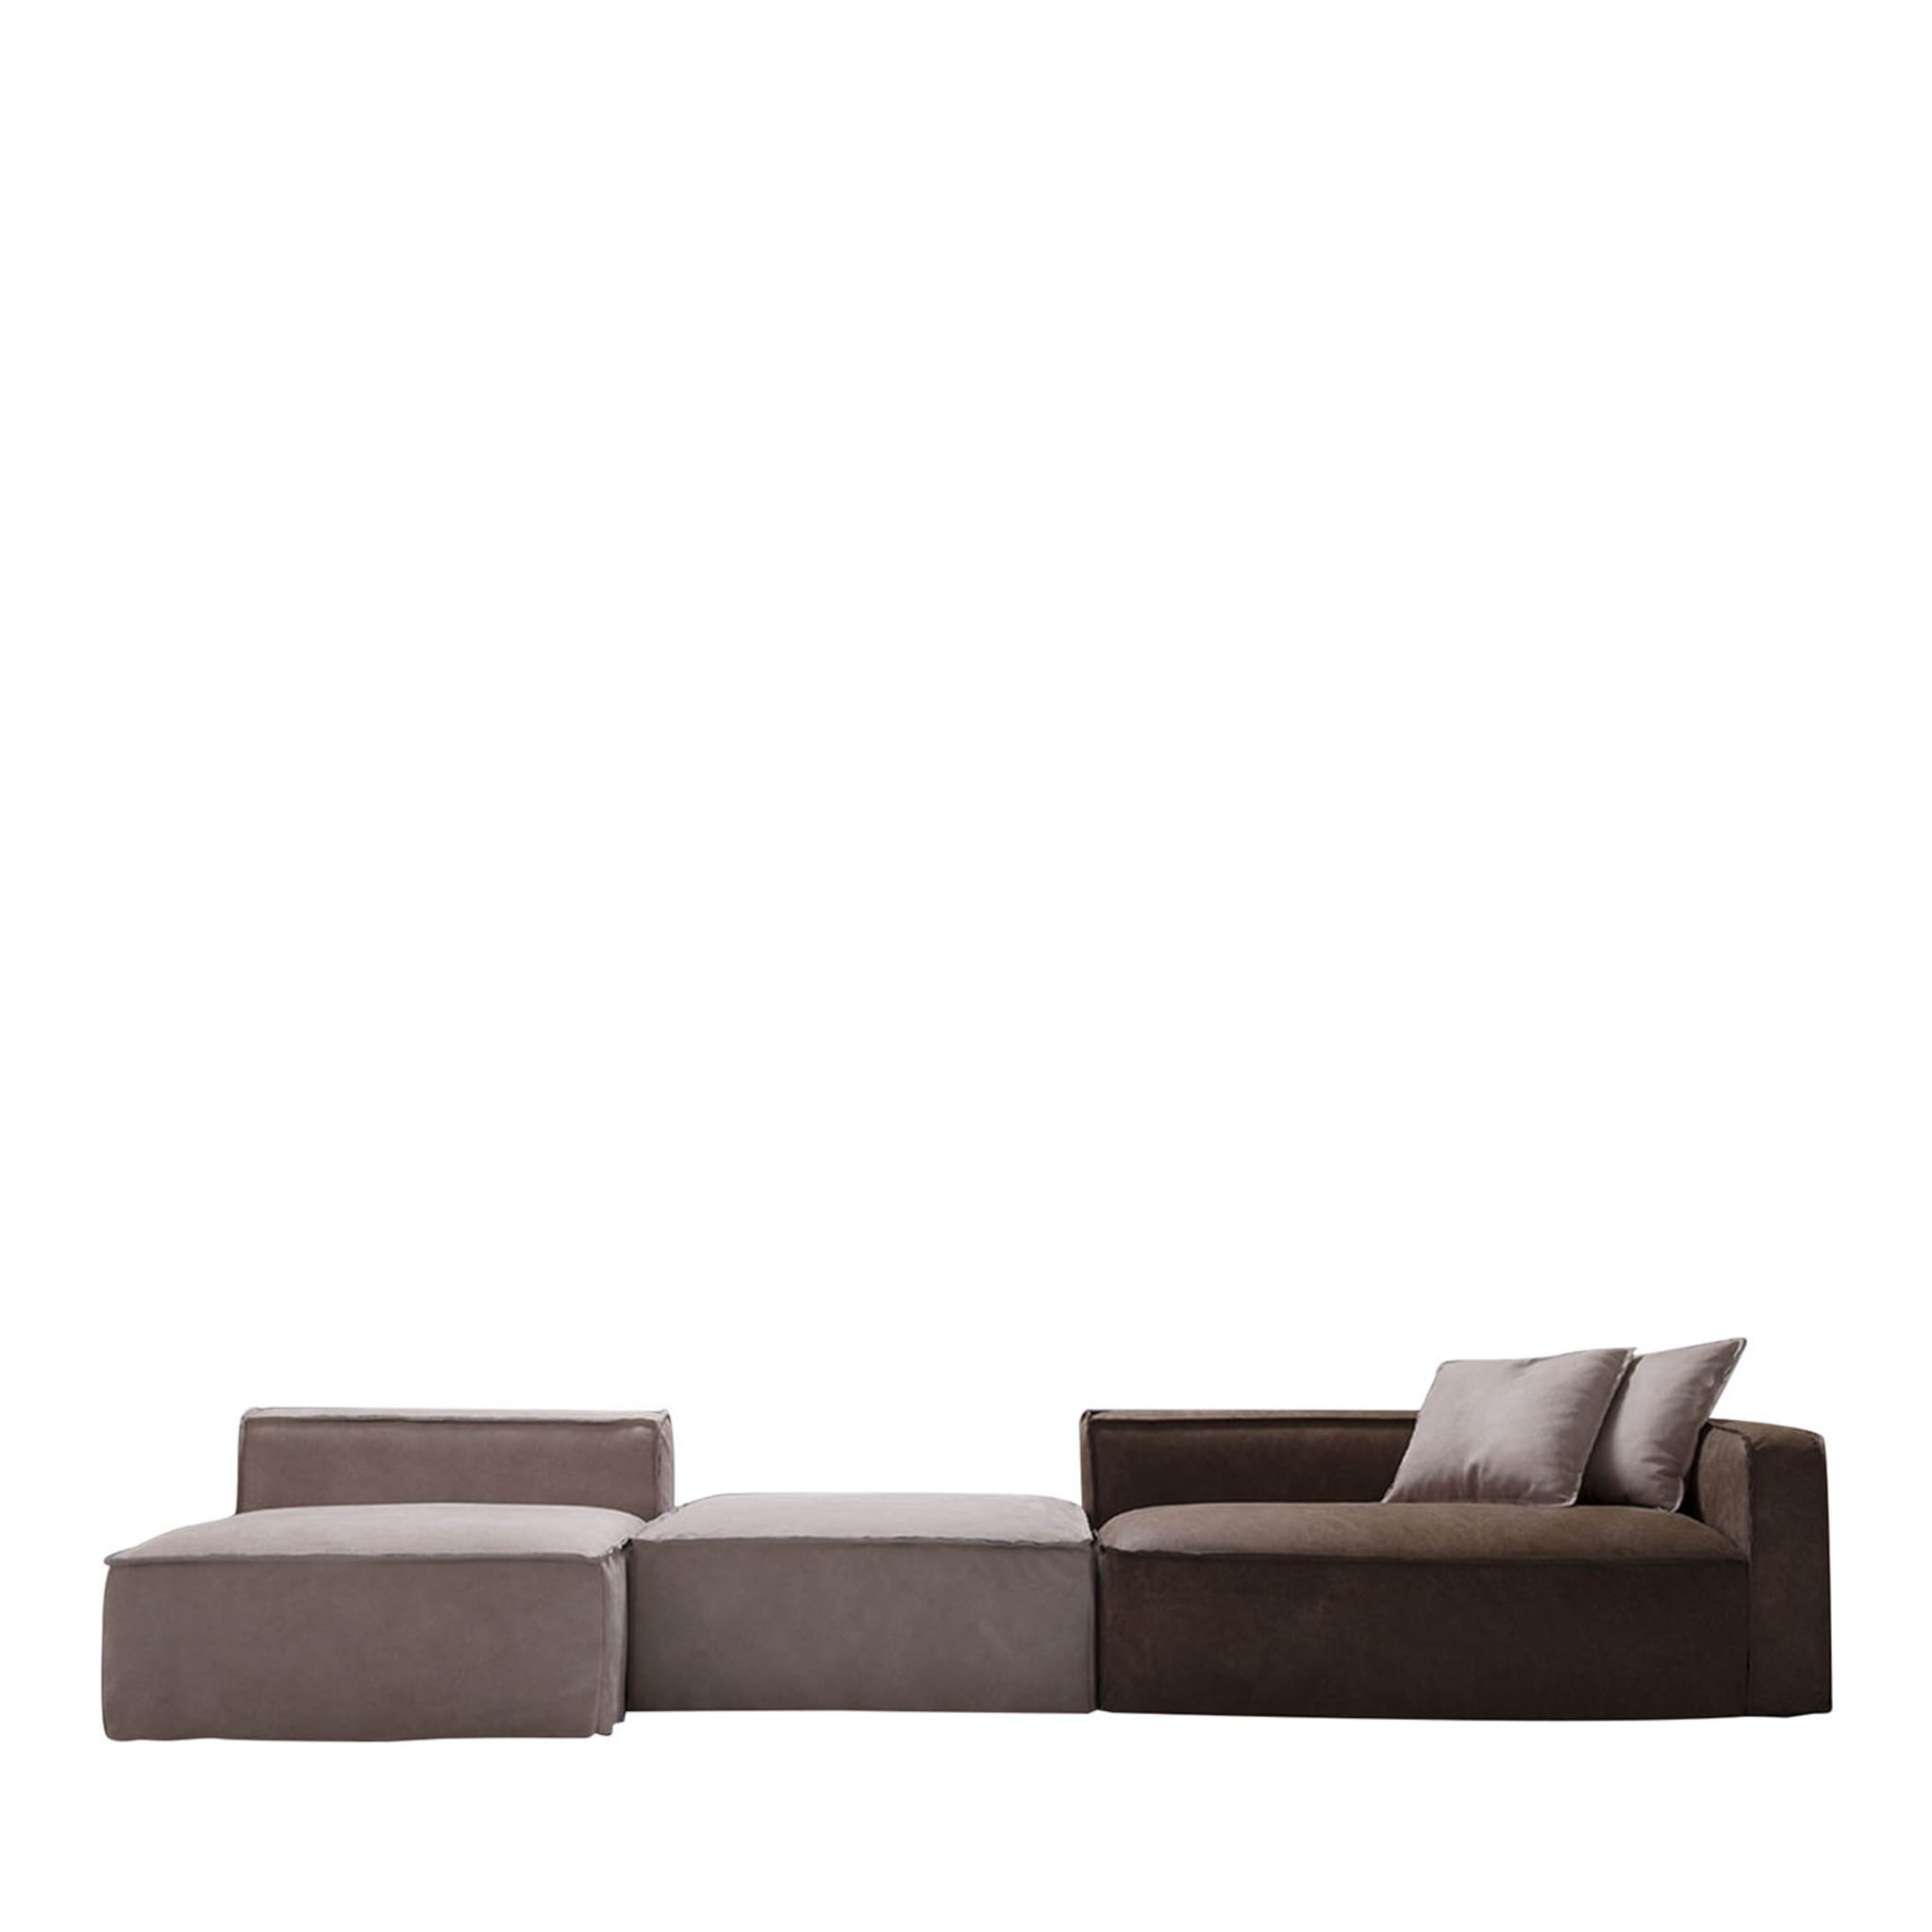 Softly Brown and Sand Modular Sofa - Main view